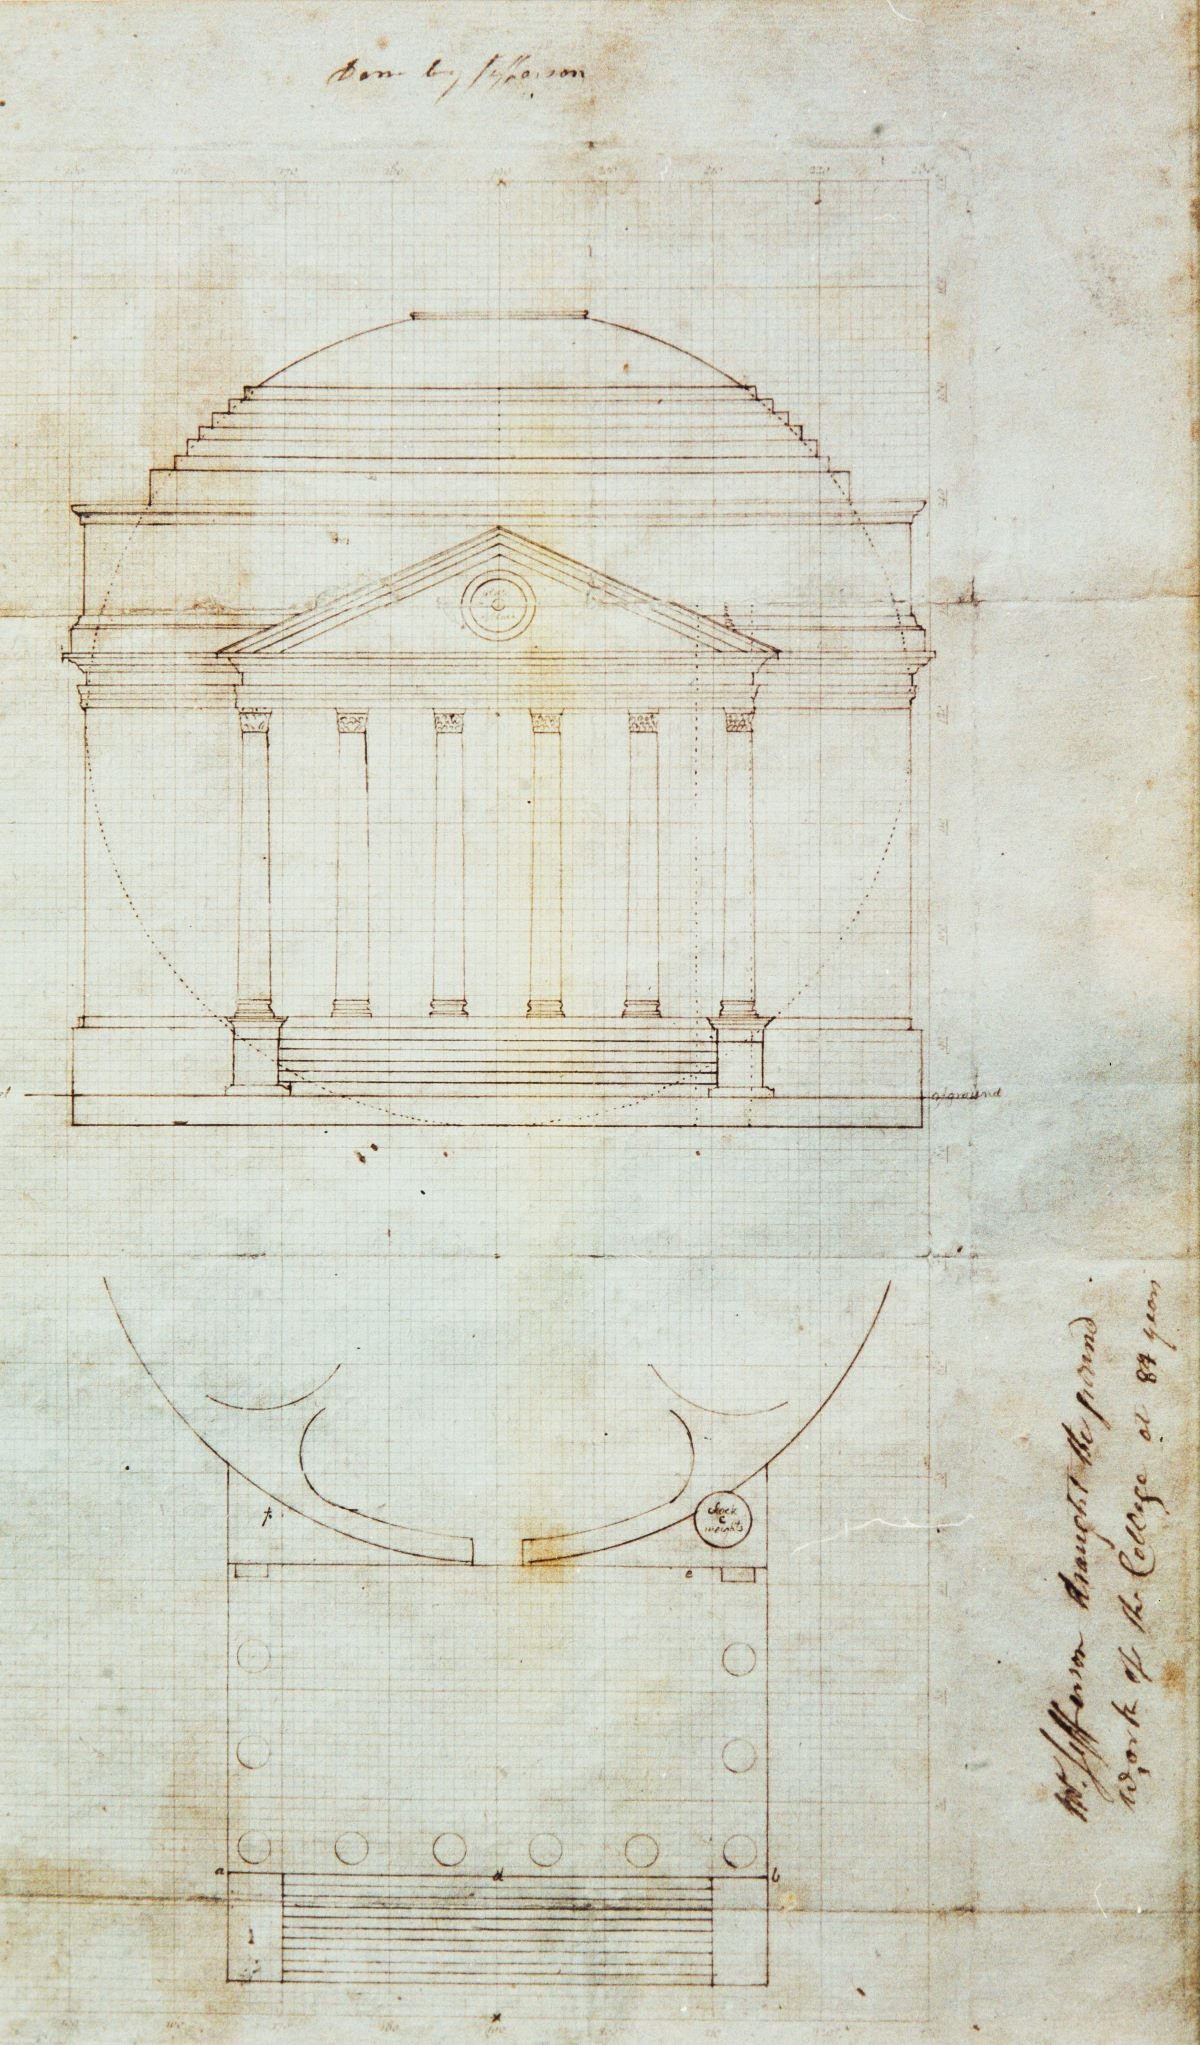 Rotunda drawing by T. Jefferson, 1826